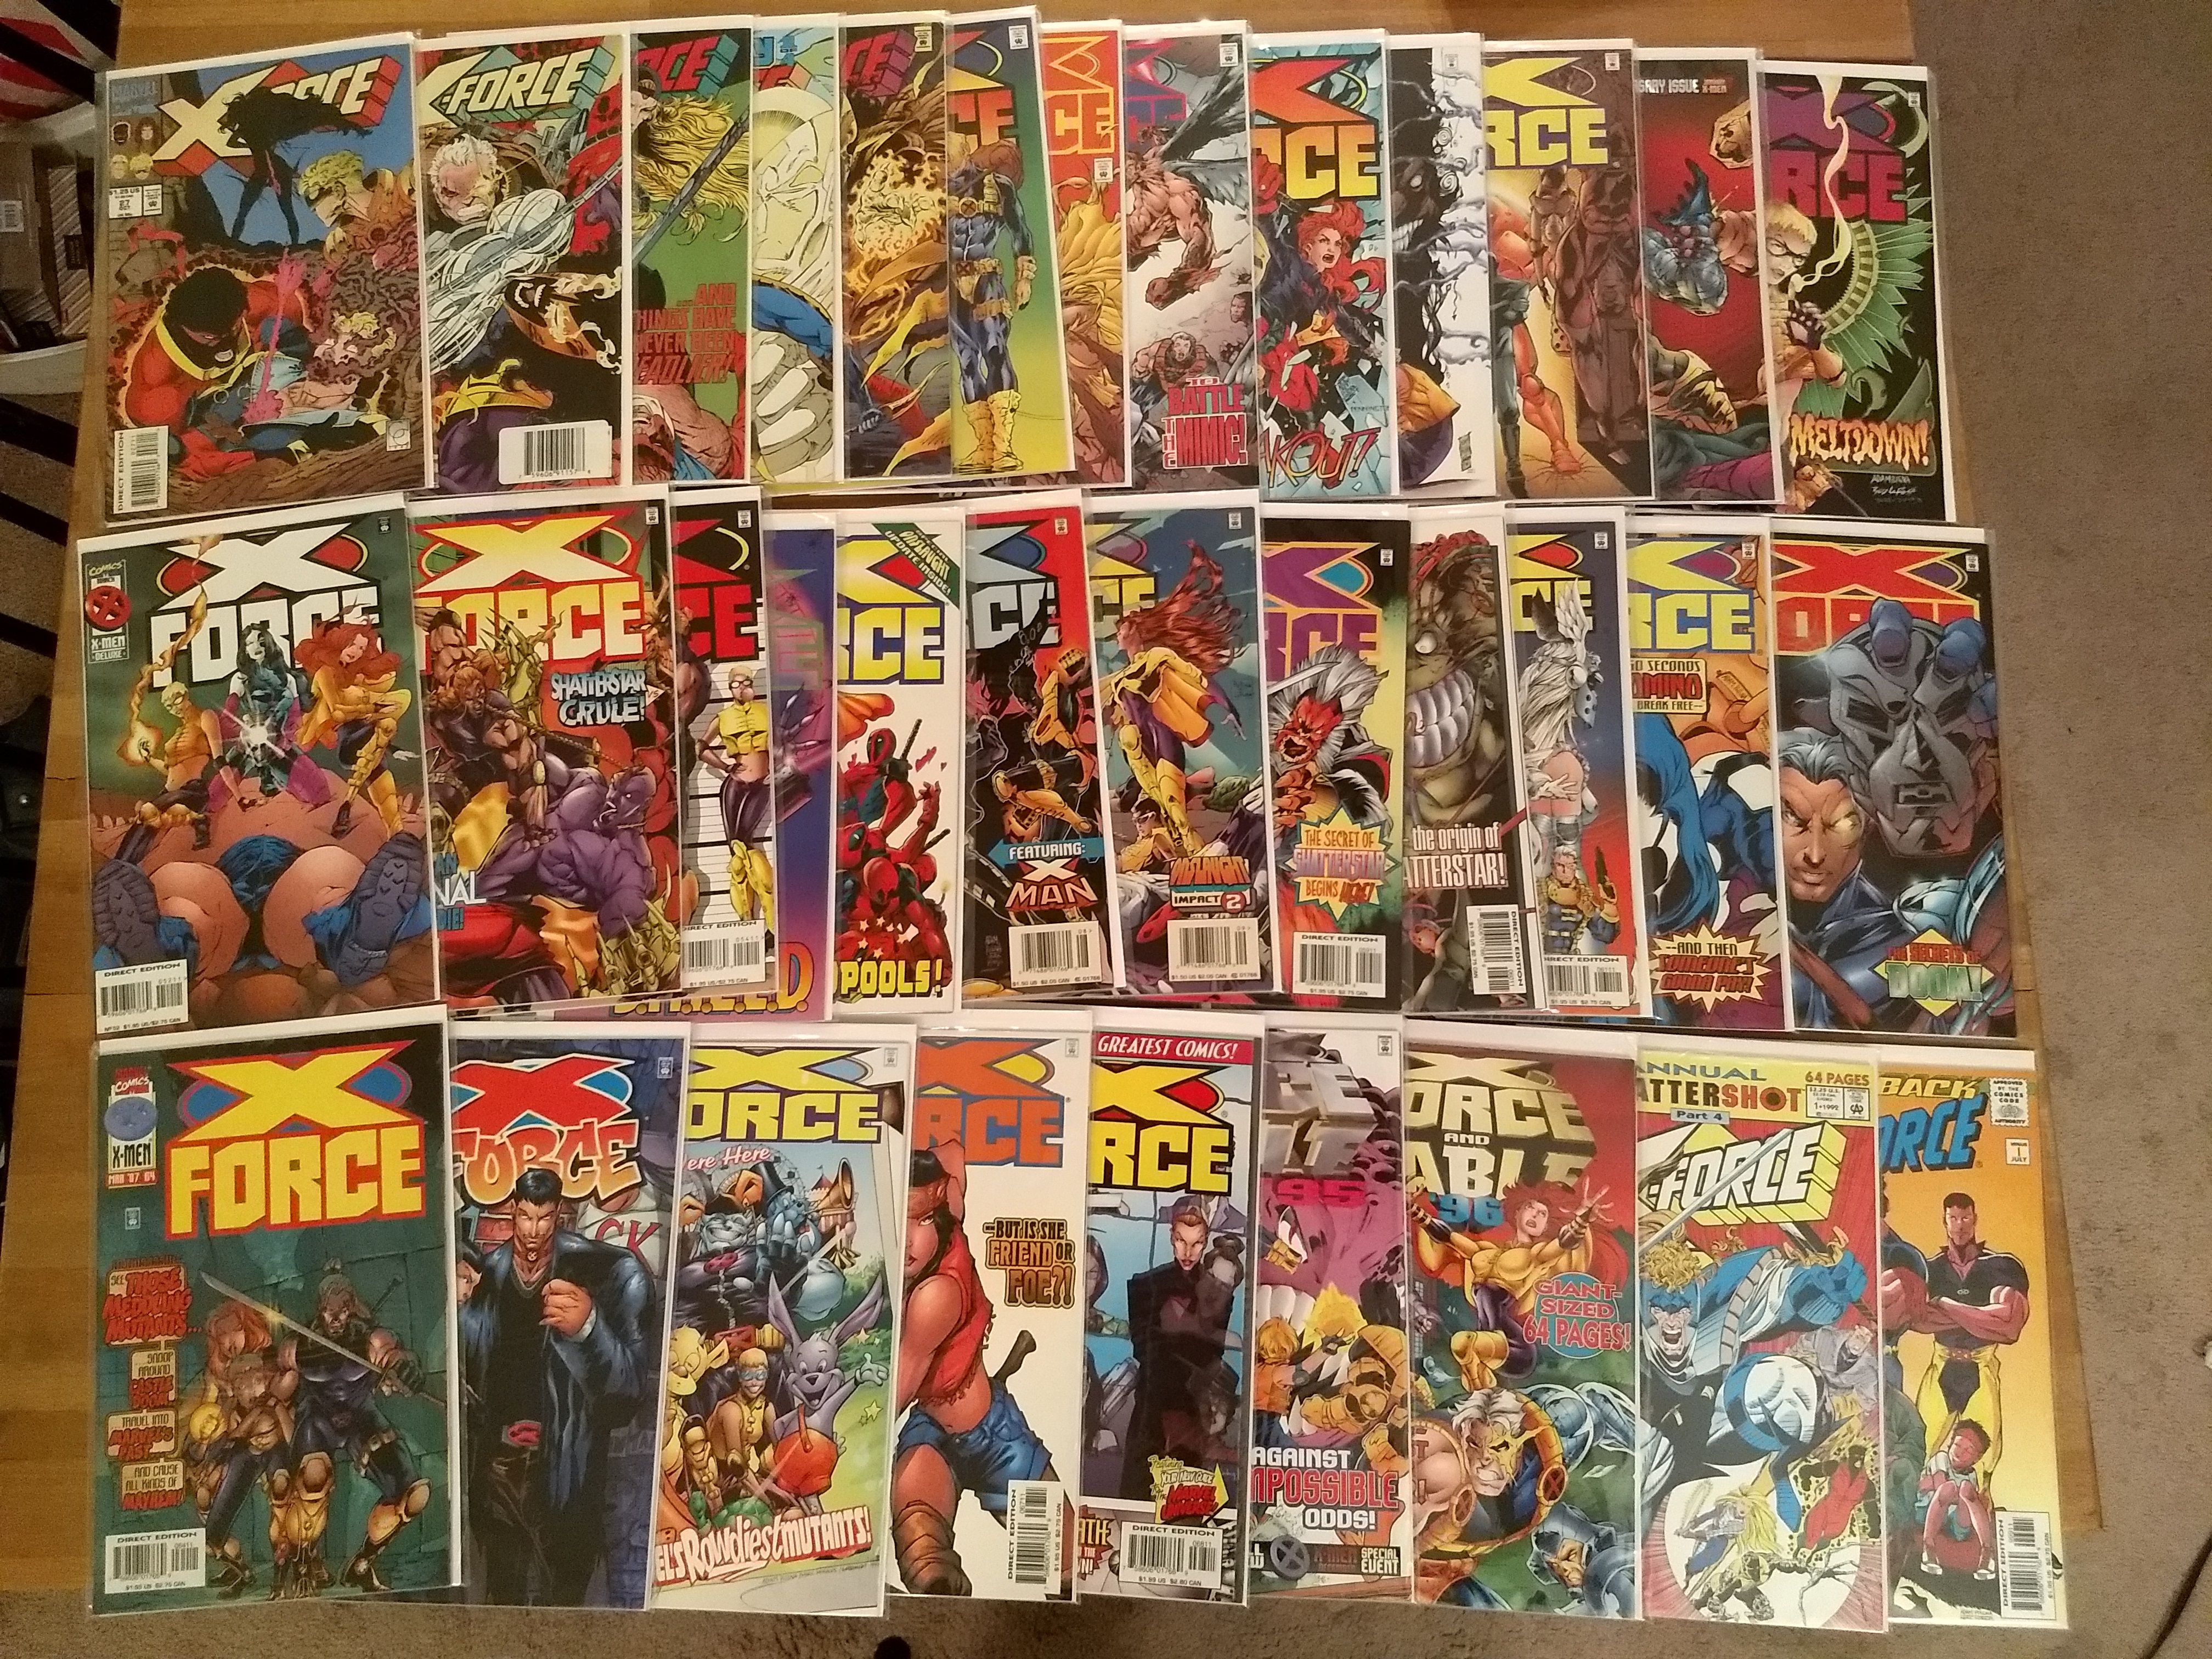 X-Force (Volume 1) Comic Book Lot - 35 Issues (Marvel Comics)